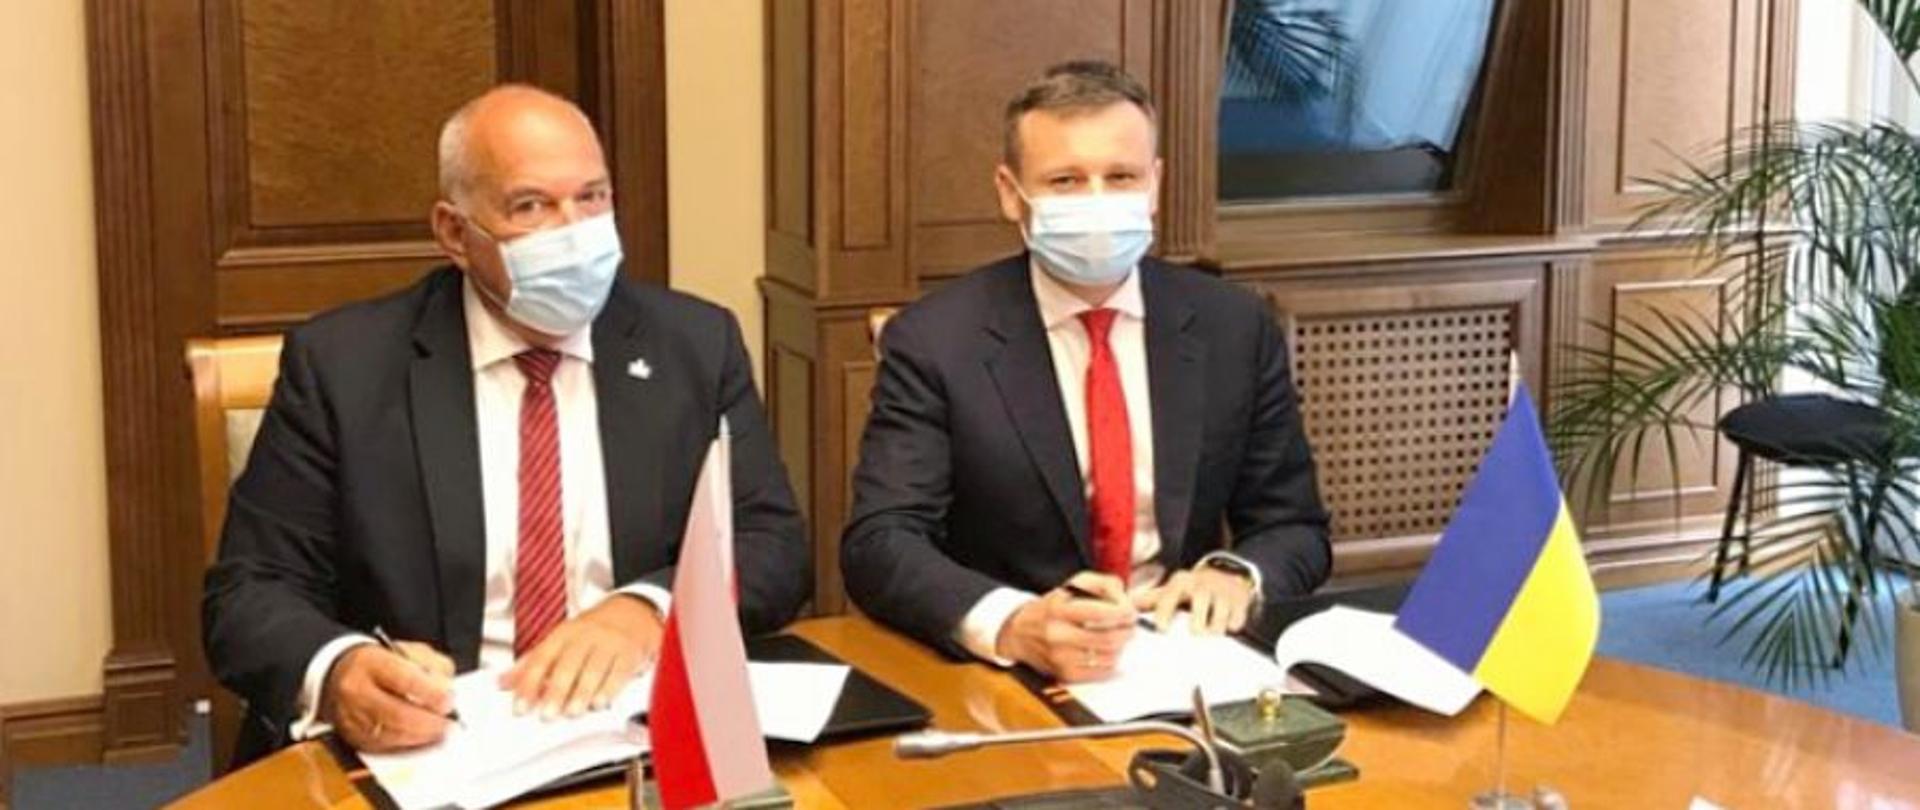 Ministrowie finansów Polski i Ukrainy Tadeusz Kościński i Siergiej Marczenko podczas podpisywania deklaracji o pogłębieniu współpracy w walce z przestępczością podatkową i karuzelami VAT.